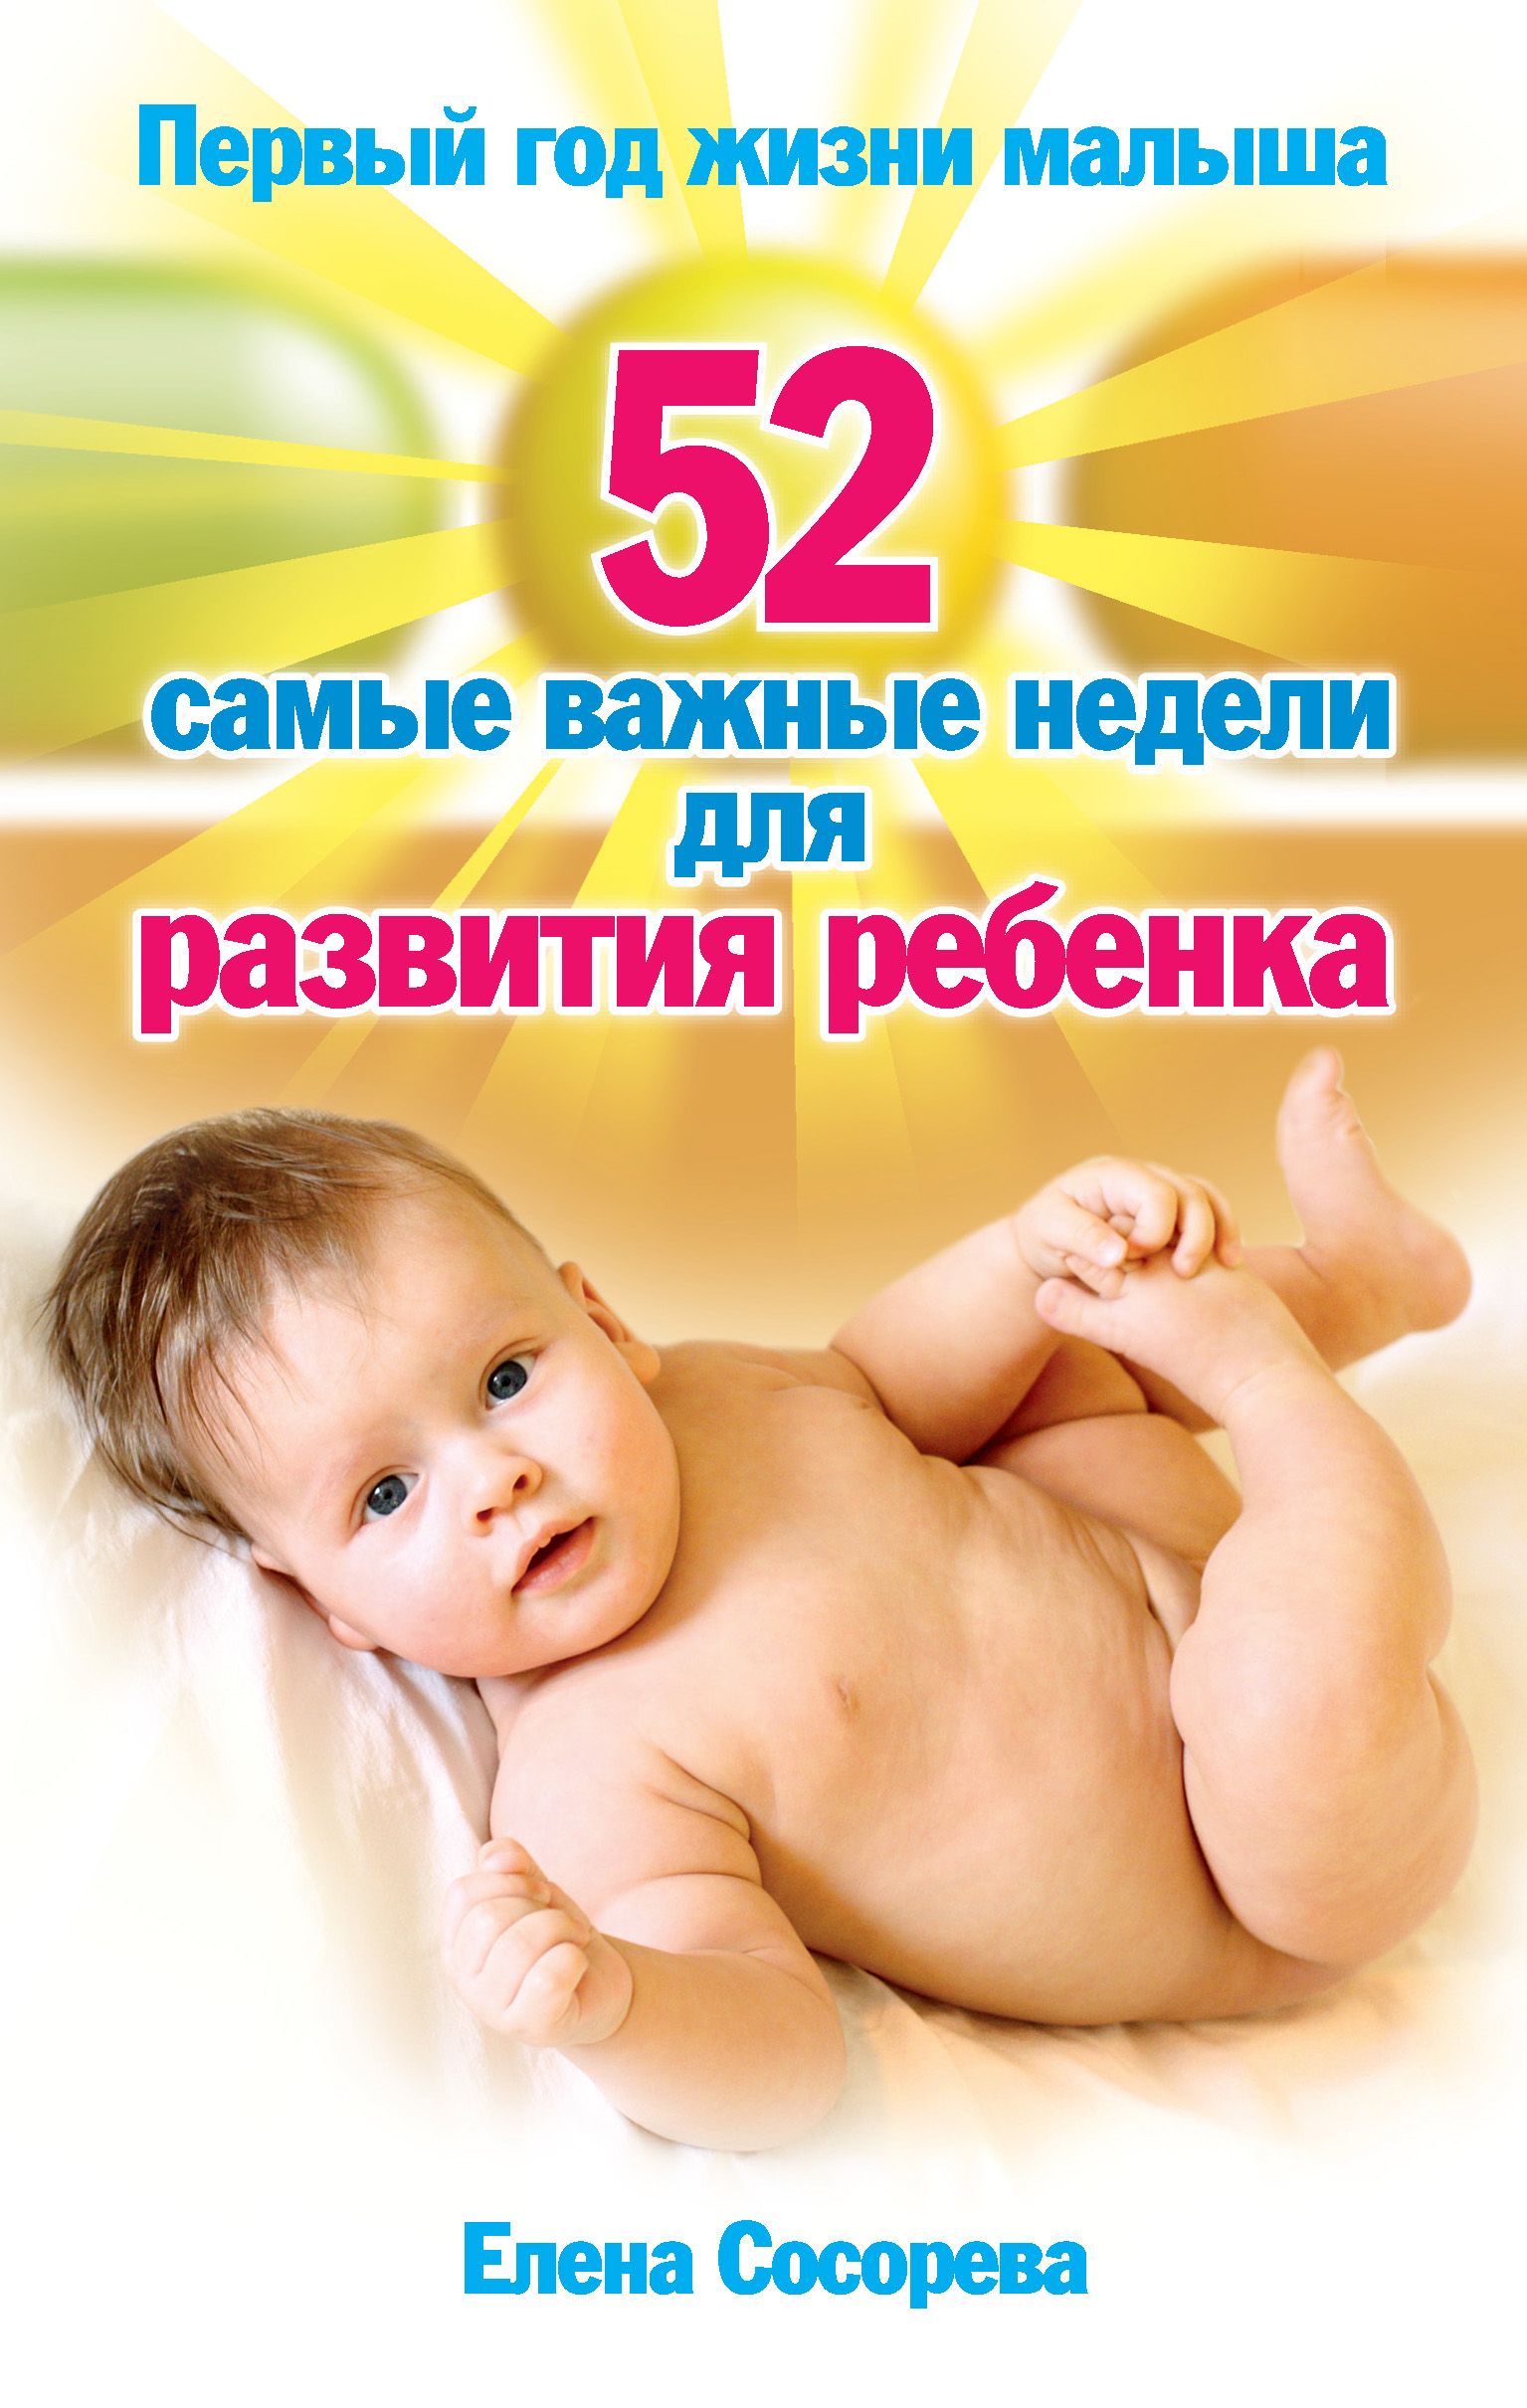 Живи малыш отзывы. Первый год жизни ребенка. Первый год жизни ребенка книга. Развитие ребенка в первый год жизни. С первой неделей жизни малыша.